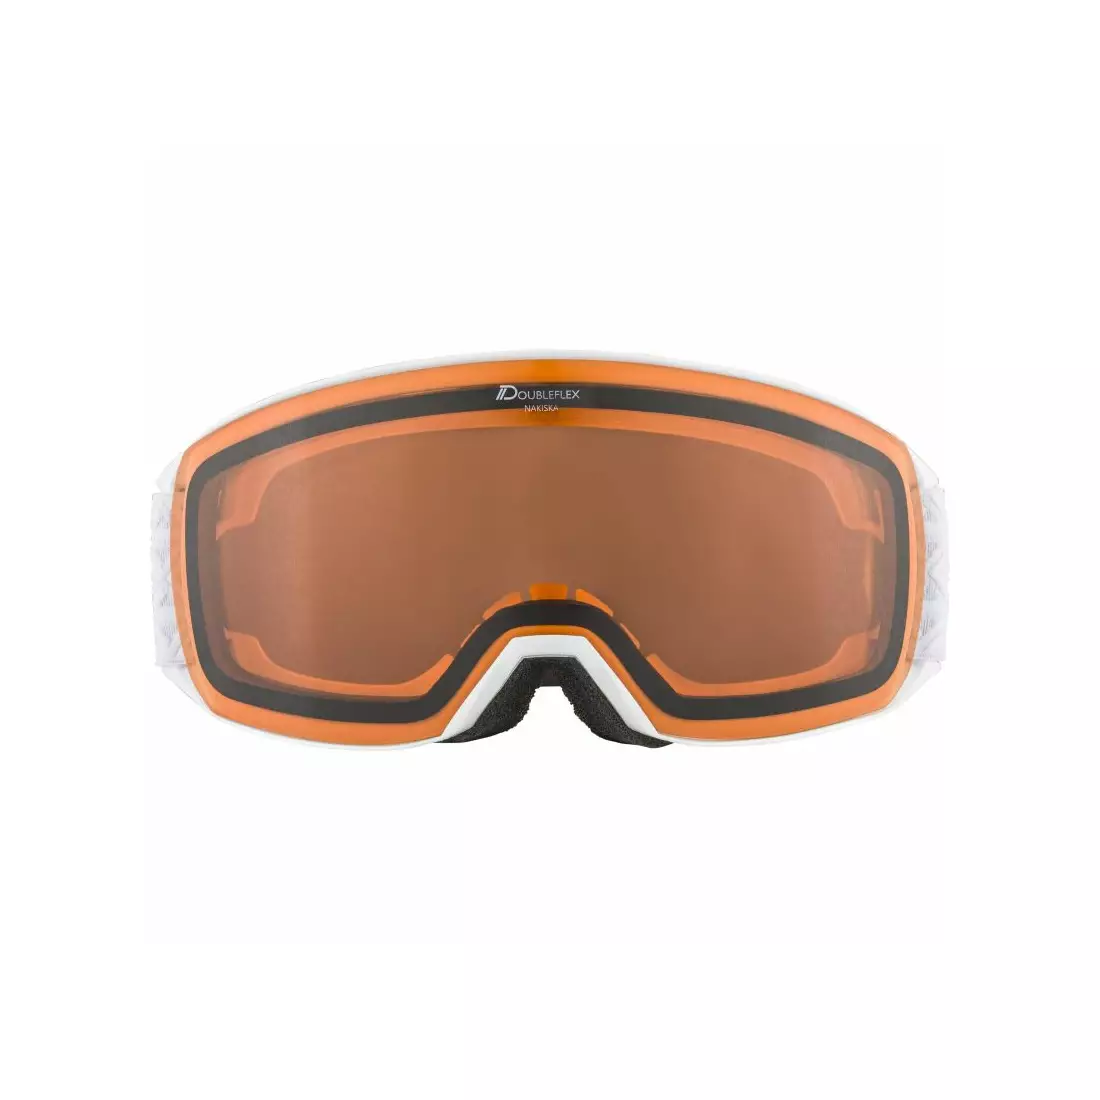 ALPINA ski / snowboard goggles M40 NAKISKA DH white A7281111